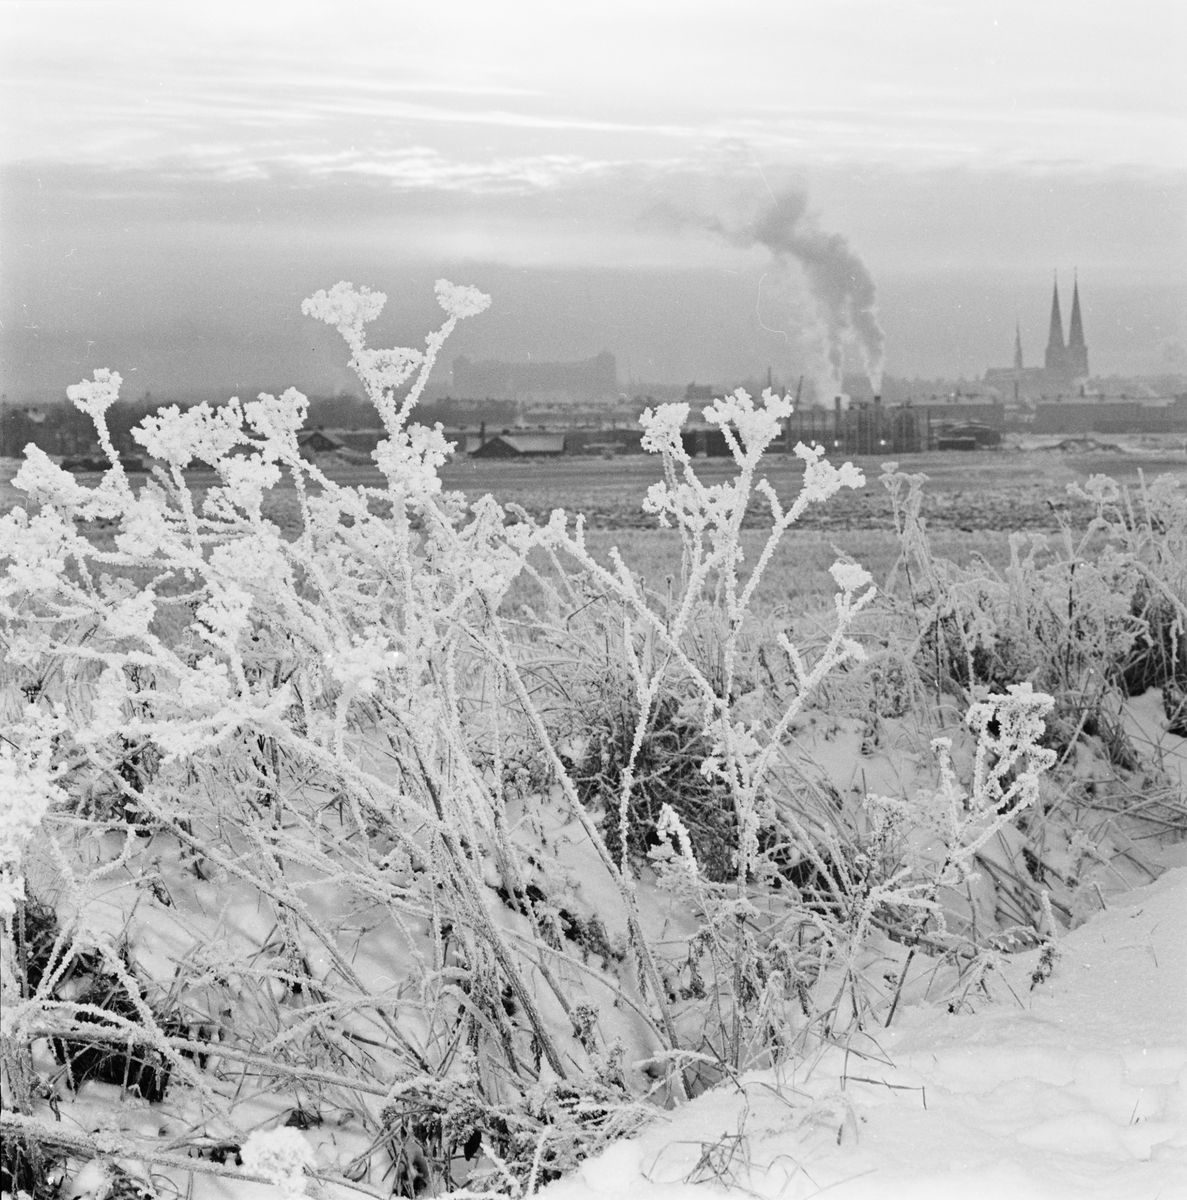 Vinter, Uppsala december 1962